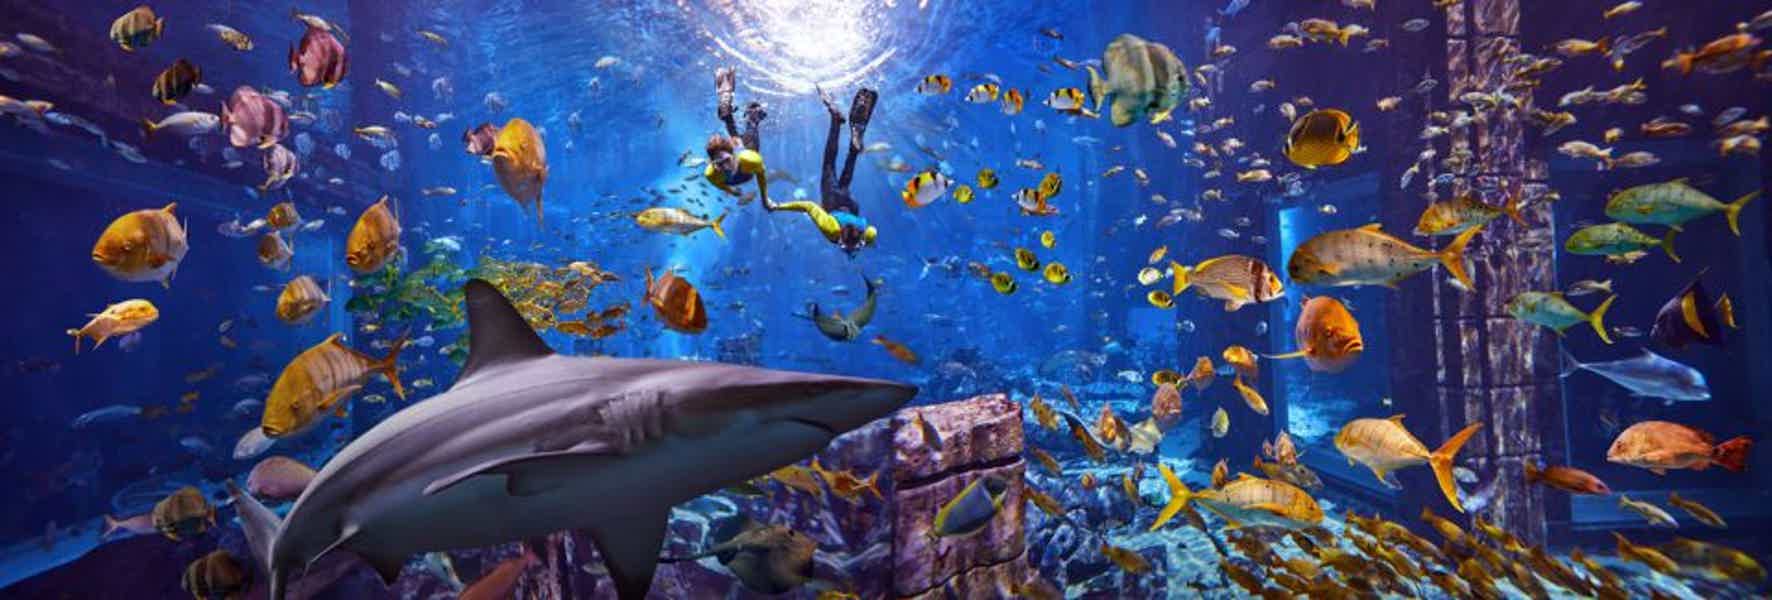 Подводное плавание с маской в Aquarium Ultimate Atlantis - фото 1